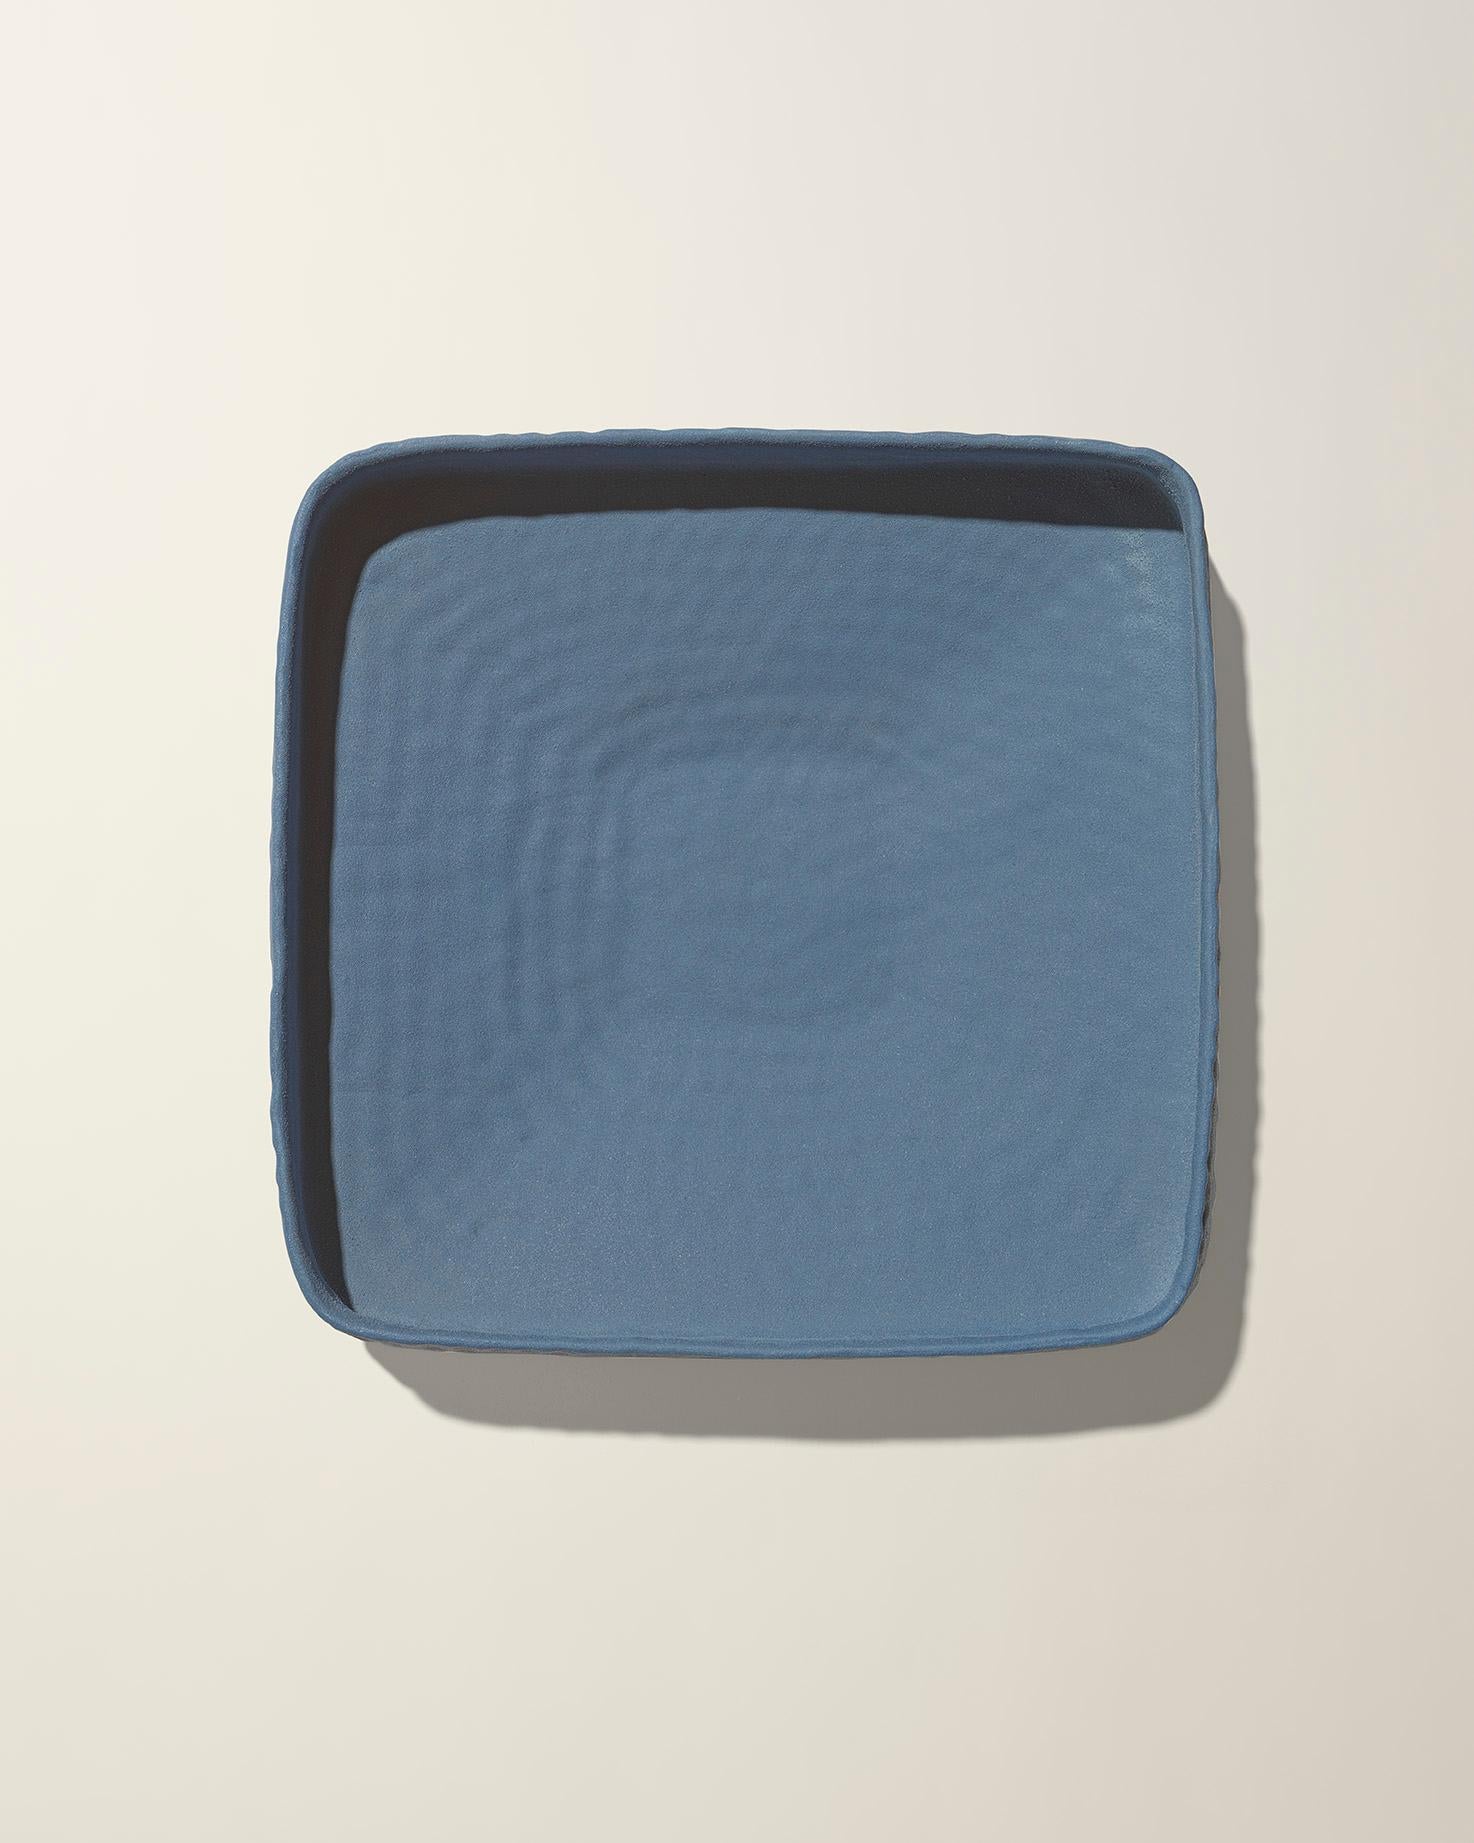 Fabriqué en Italie, ce bol bas martelé, de couleur bleu ciel mat, a été conçu par Andrea Anastasio dans l'historique Bottega Cercamica Gatti 1928 à Faenza, en Italie, spécialisée dans la création d'art céramique, qui convient parfaitement aux